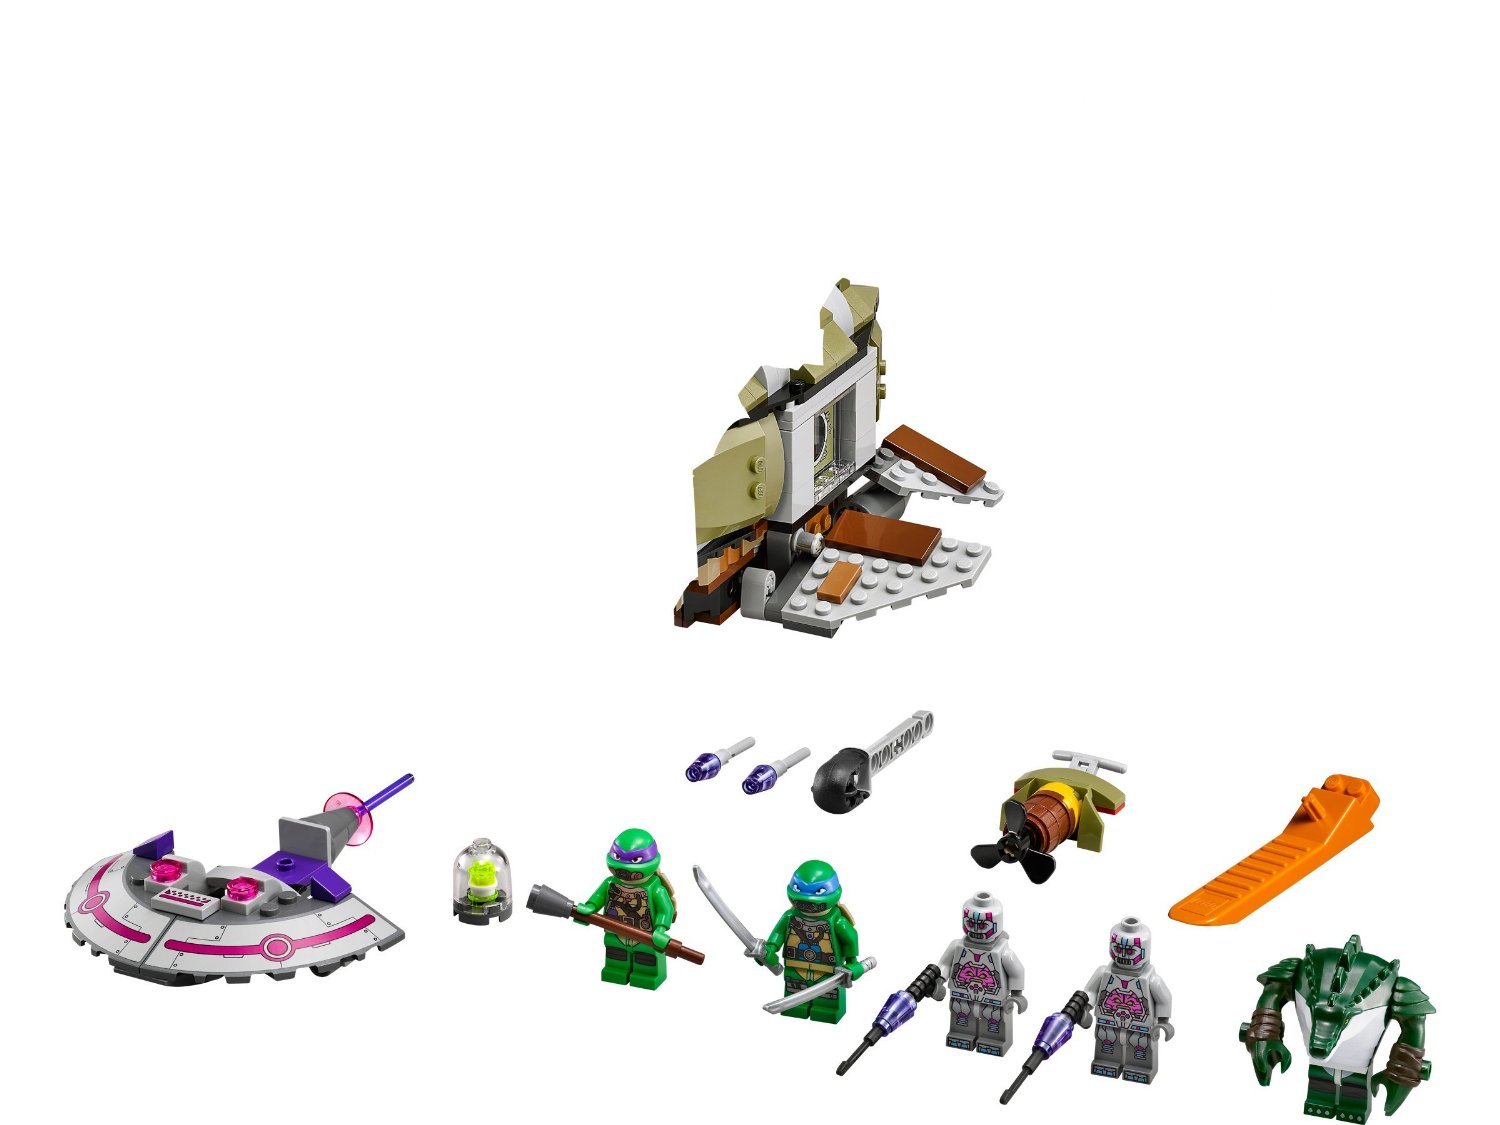 Pościg łodzią podwodną Lego Turtles 79121